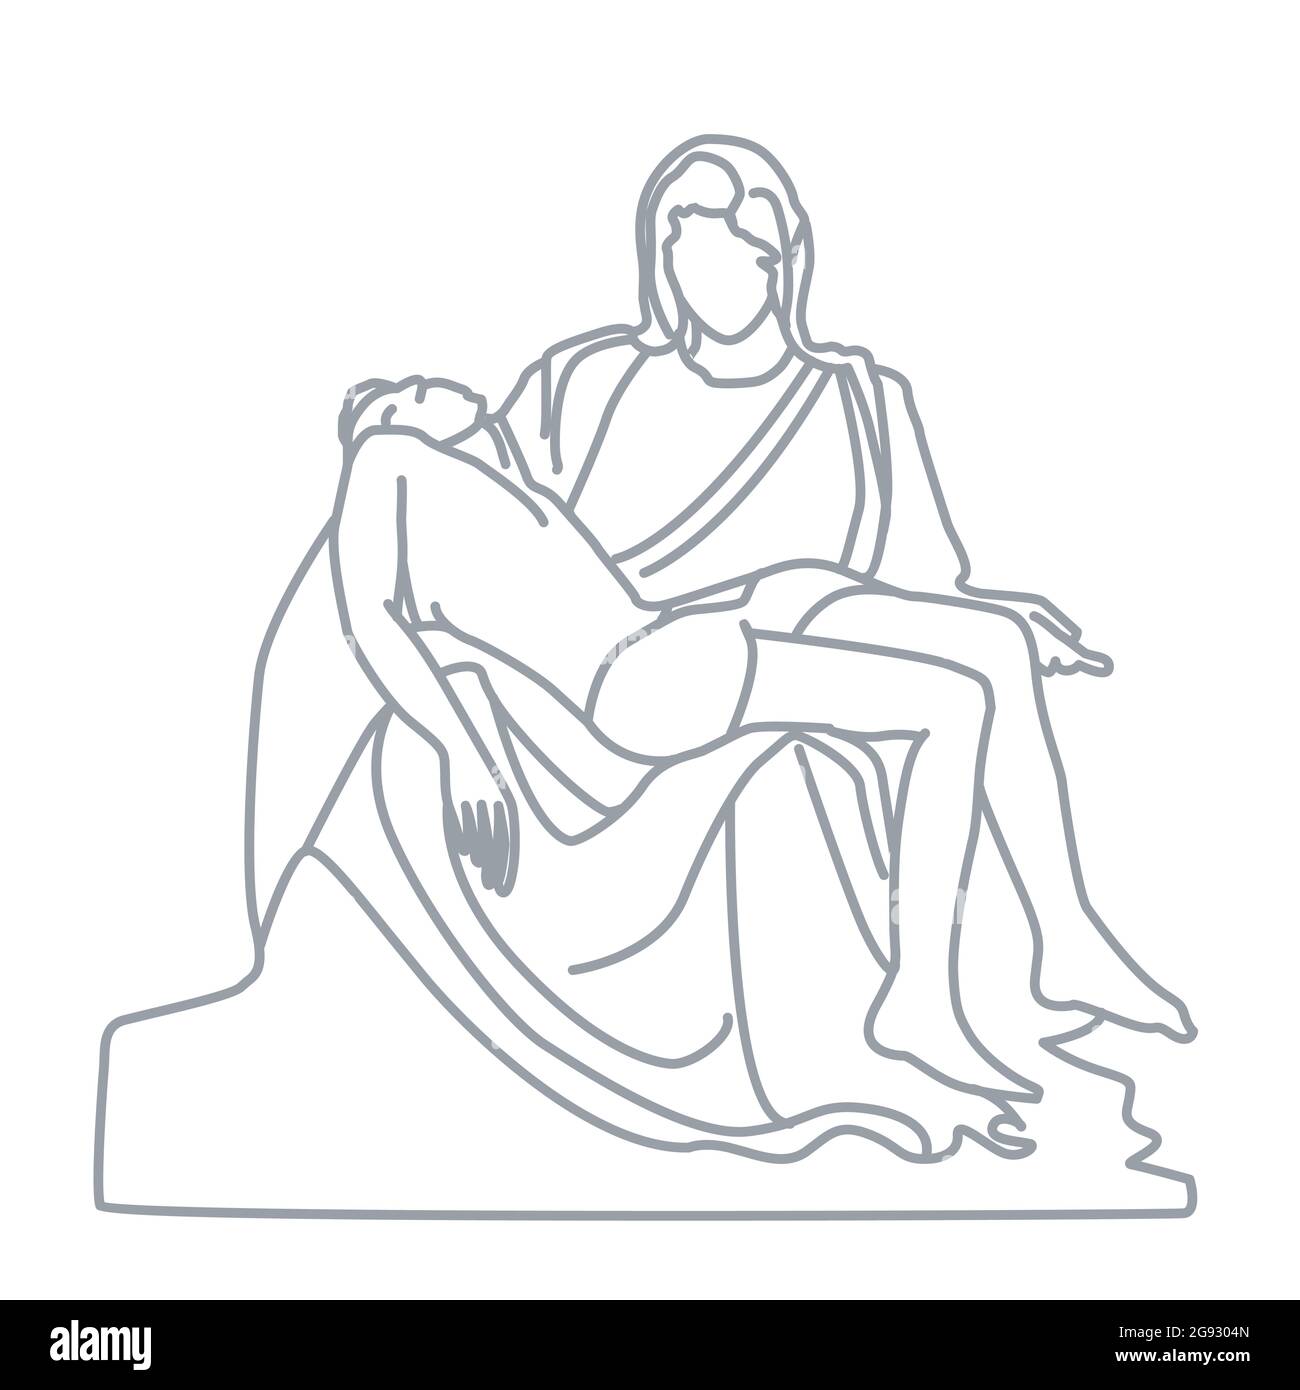 Pieta-Skulptur von Michelangelo in der Petersbasilika. Dieses berühmte Kunstwerk zeigt den Leib Jesu auf dem Schoß seiner Mutter Maria afte Stock Vektor